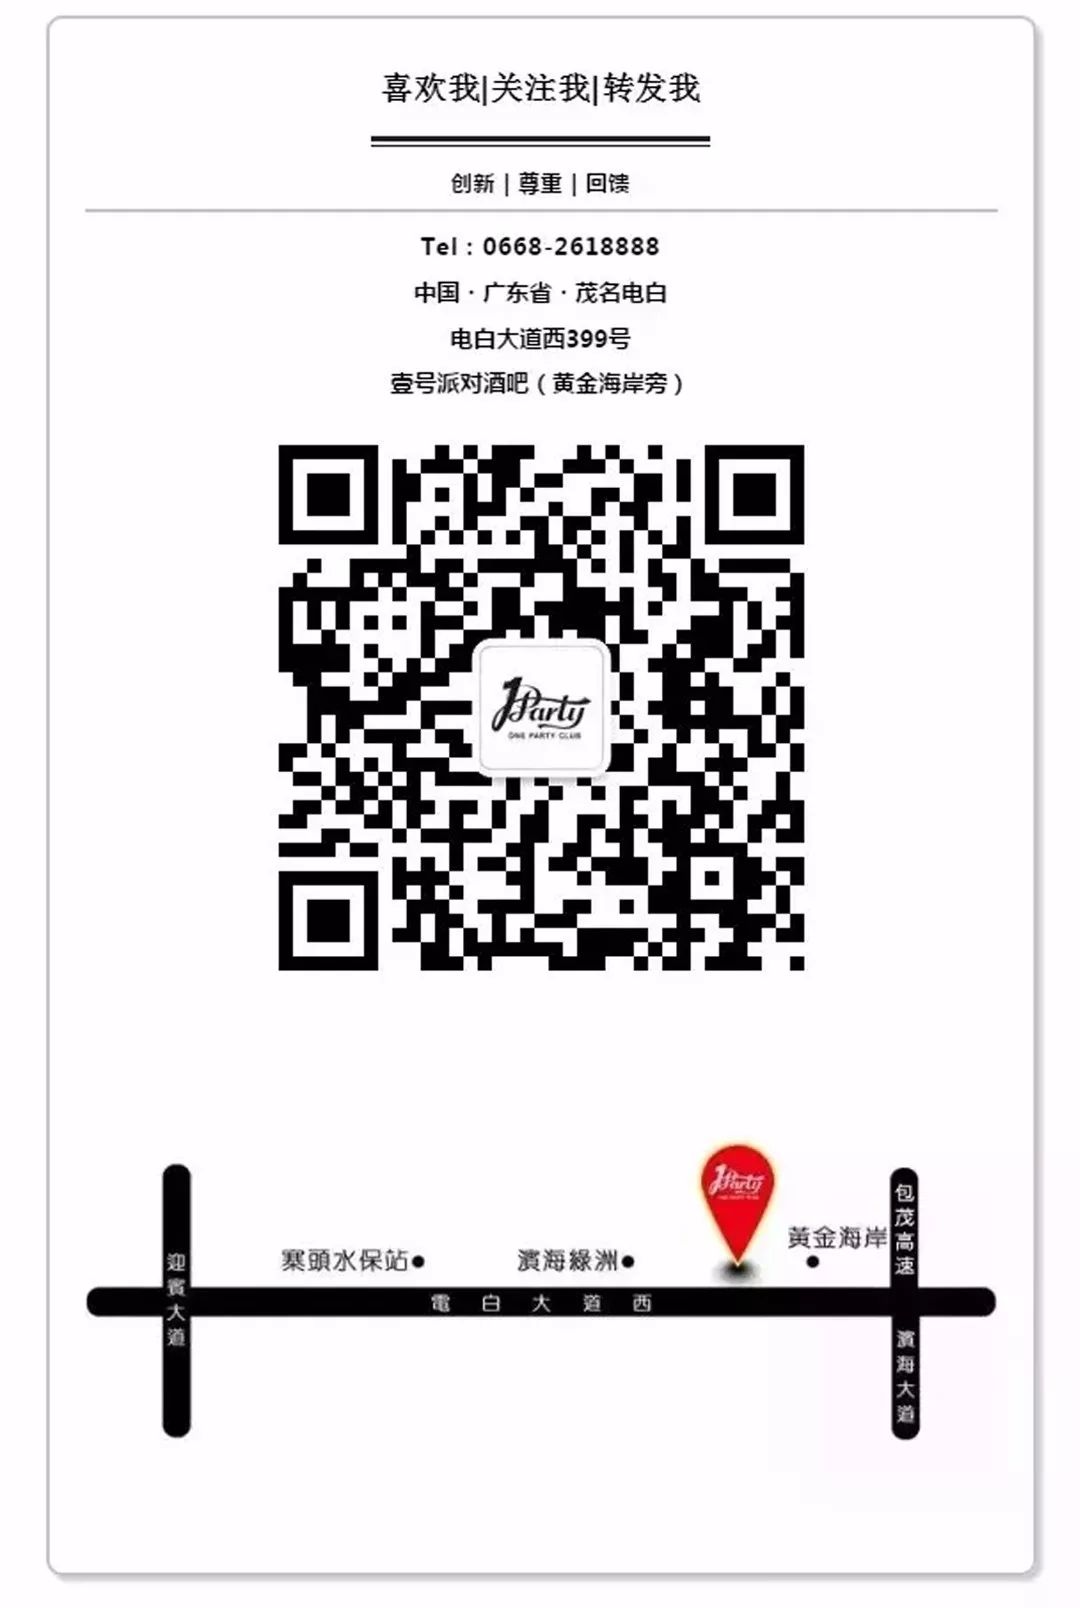 ONE PARTY | 07.21 特邀#香港影视明星张静雅 寻找迷失的多巴胺-茂名壹号派对酒吧/ONE PARTY